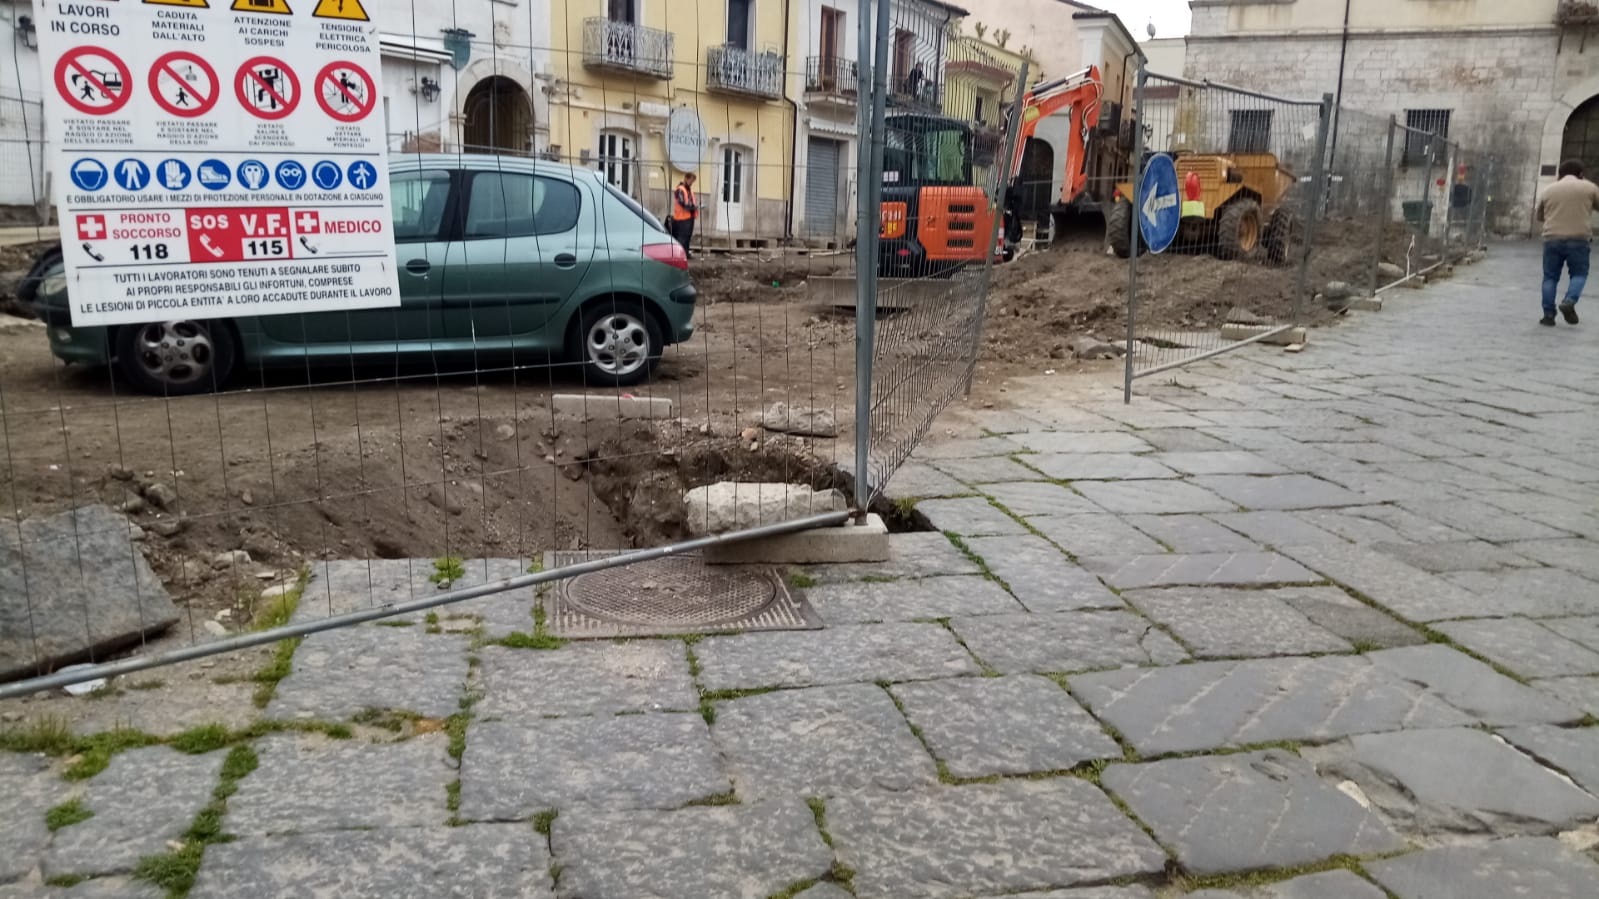 Benevento| Stalli e cantieri, le criticita’ del centro storico